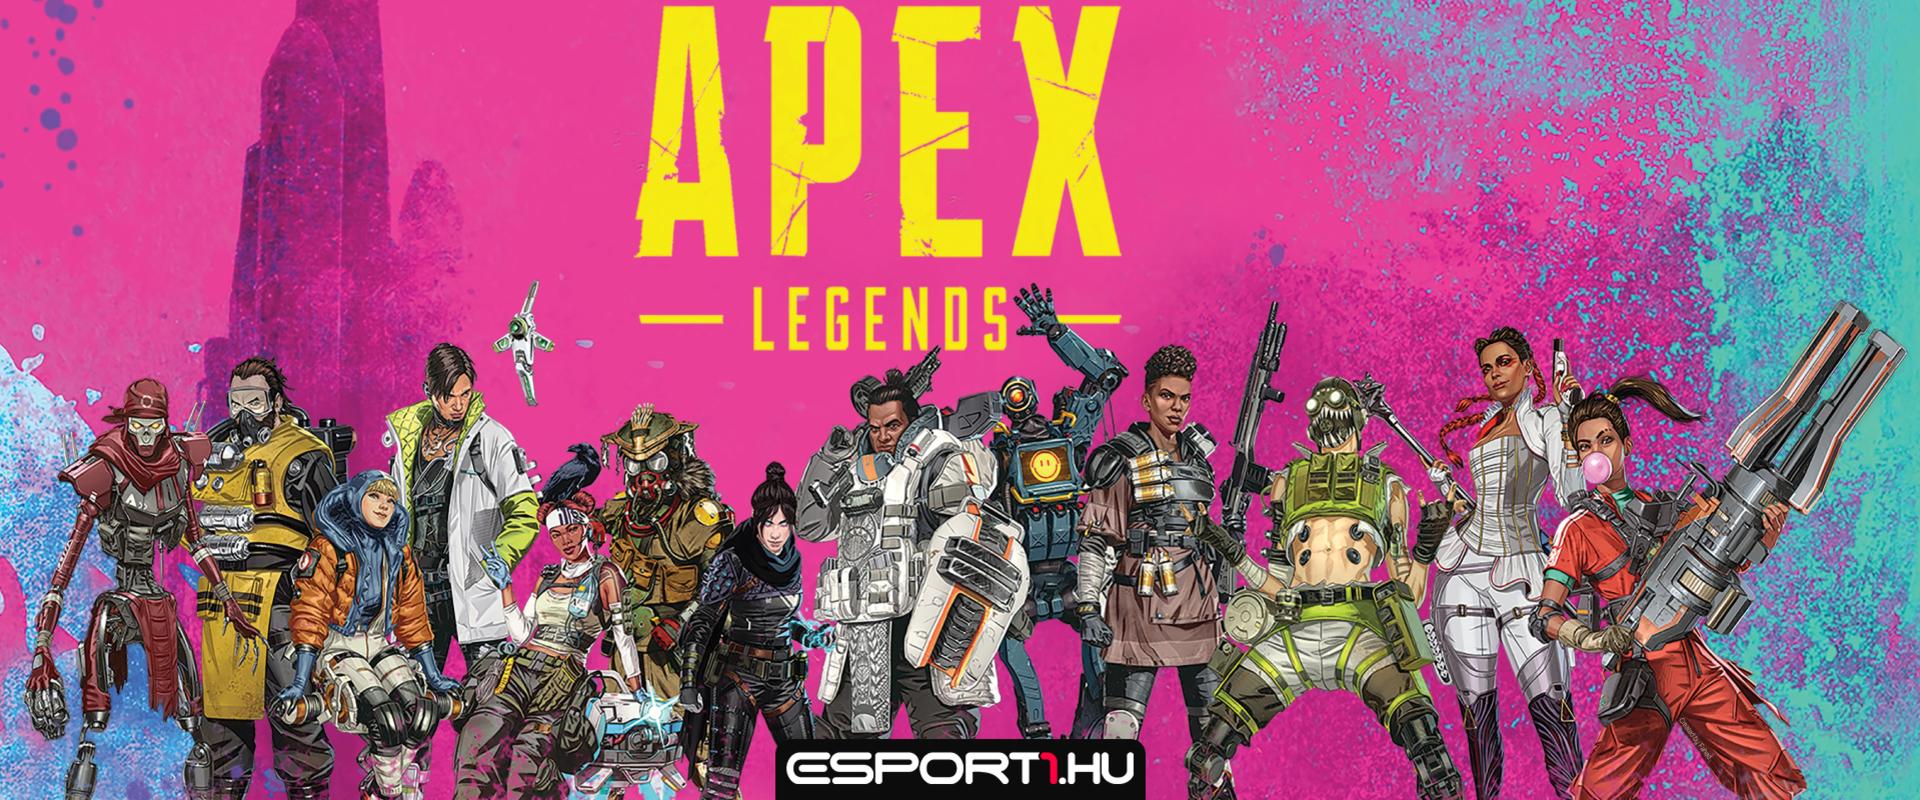 Több száz, magas rangú játékost bannoltak ki az Apex Legends szerverekről